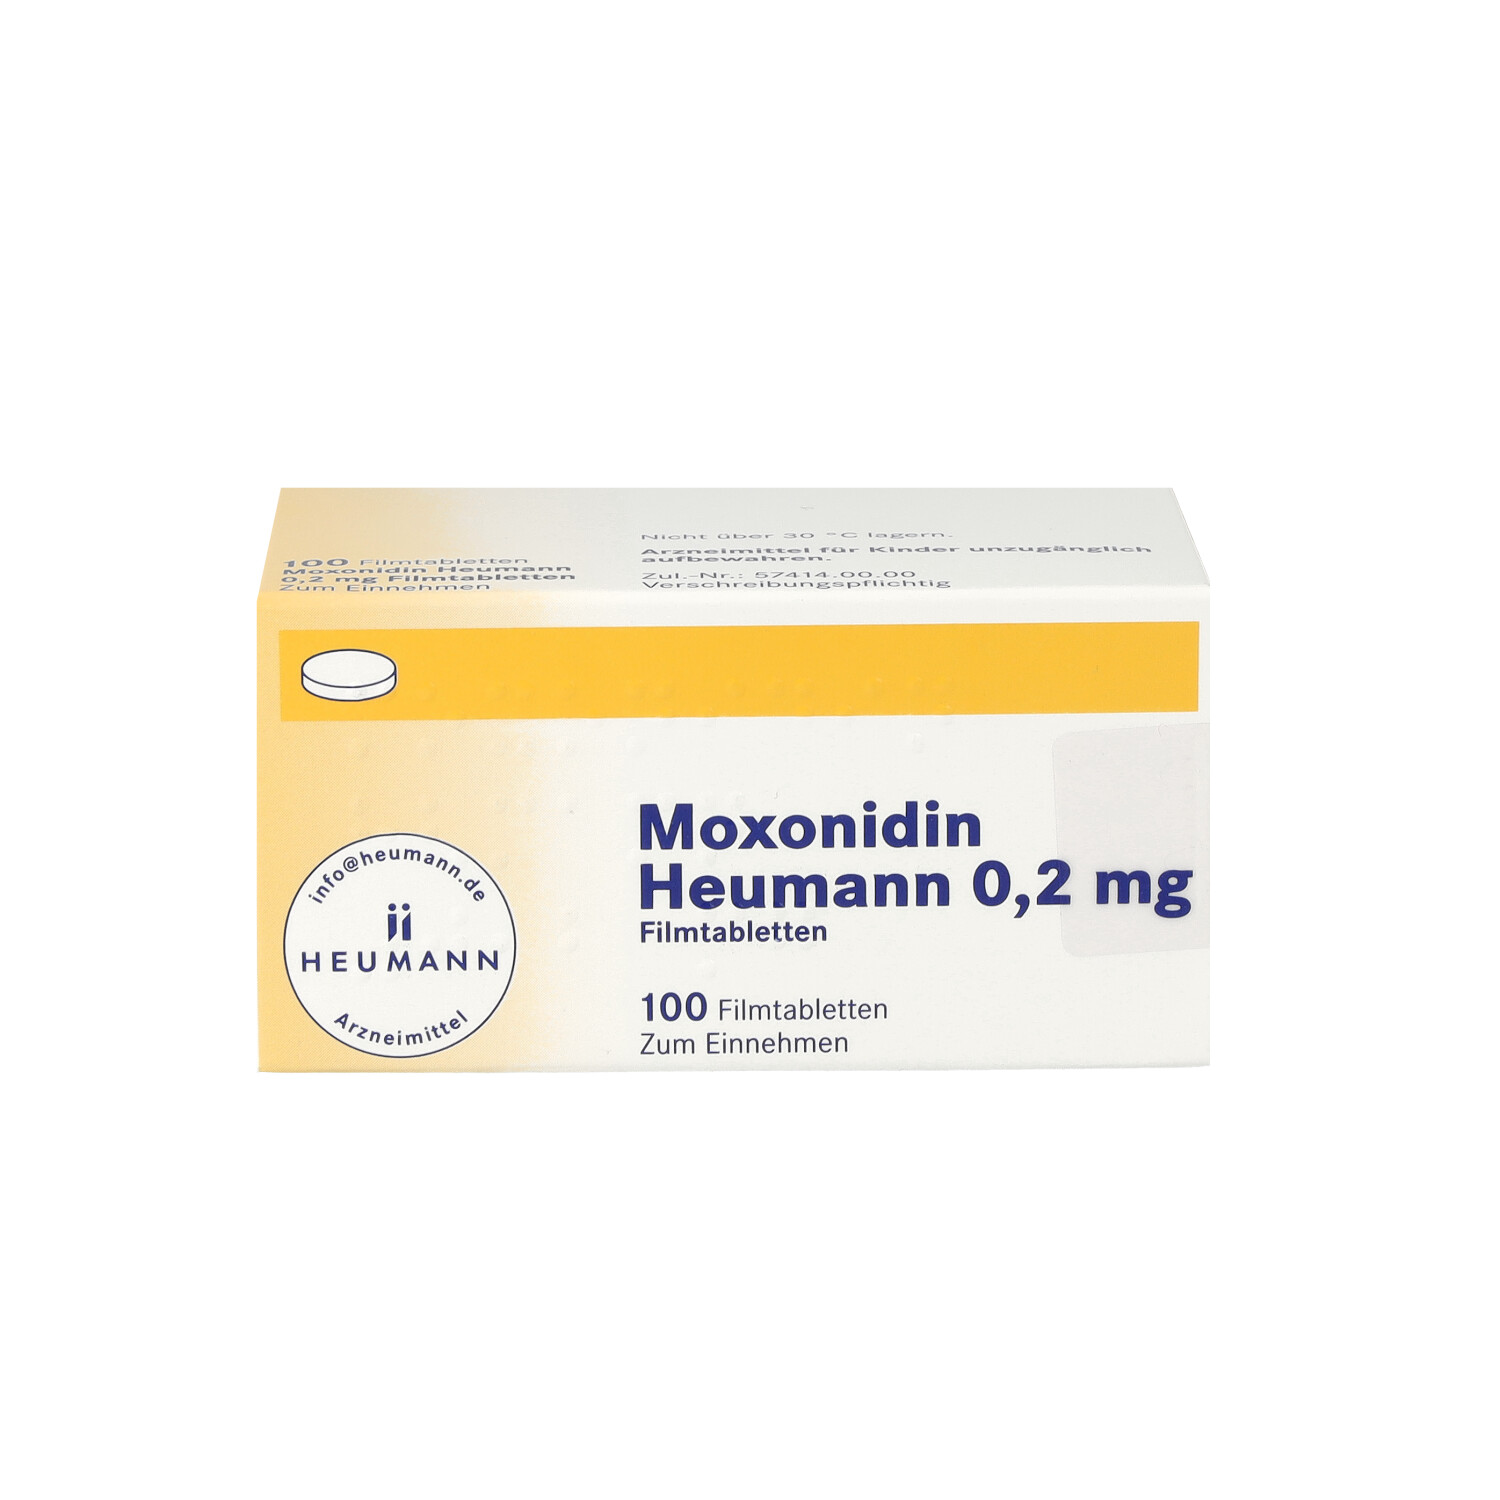 MOXONIDIN Heumann 0,2 mg Filmtabletten